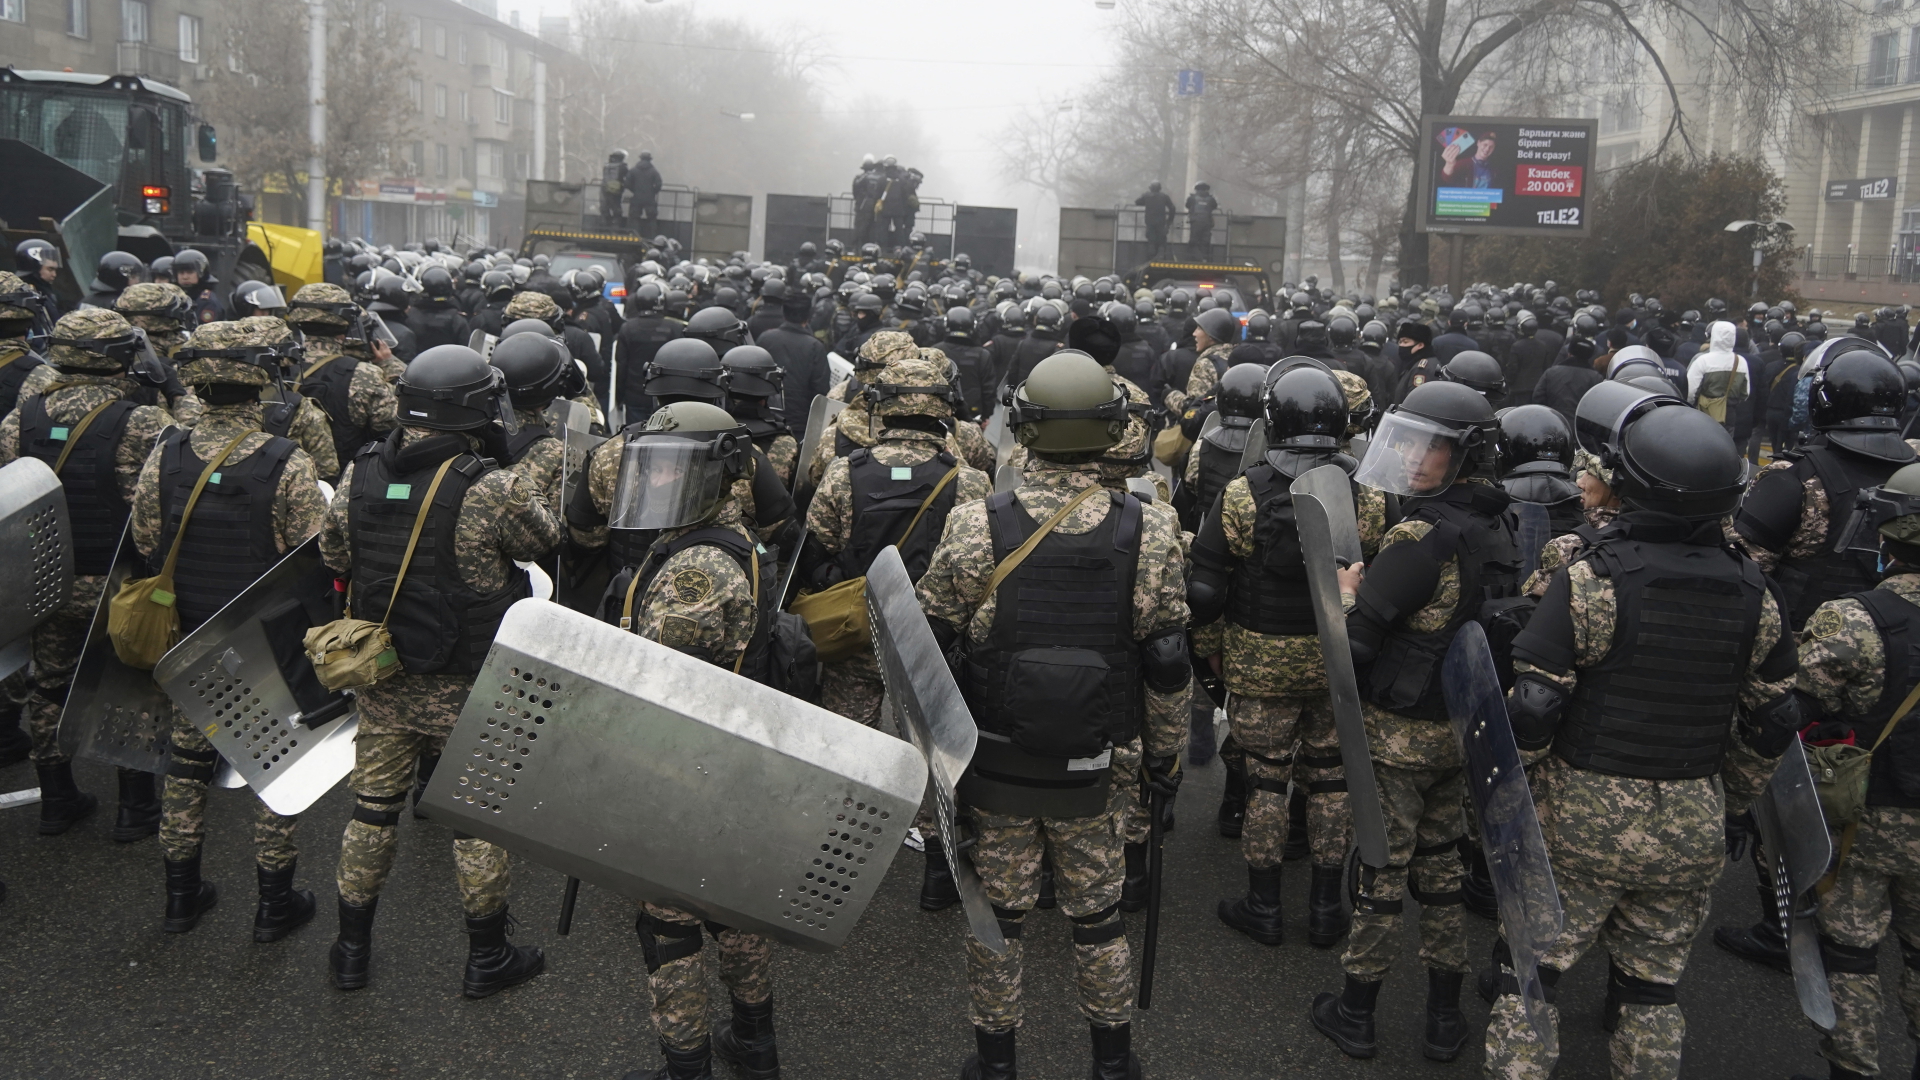 Bereitschaftspolizisten blockieren eine Straße im kasachischen Almaty, um Demonstranten aufzuhalten. | dpa